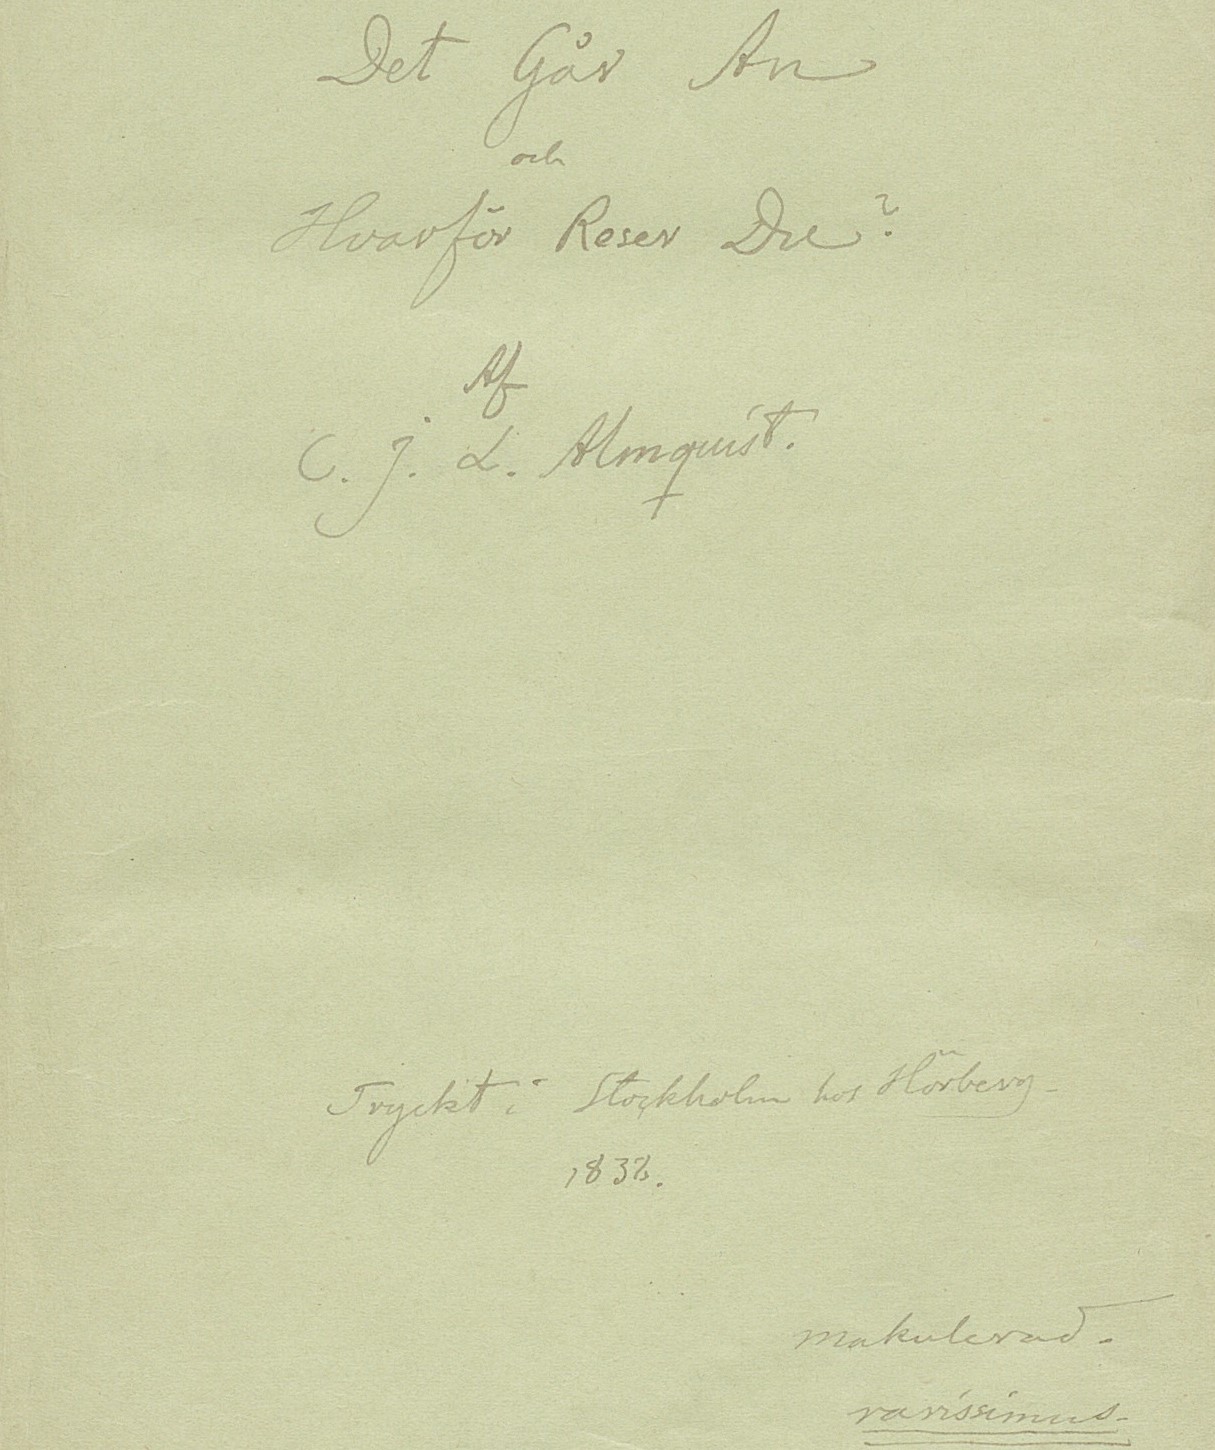 Handskrivet försättsblad till KB:s exemplar av originalupplagan av "Det går an". "Makulerad" står skrivet längst ner till höger. 